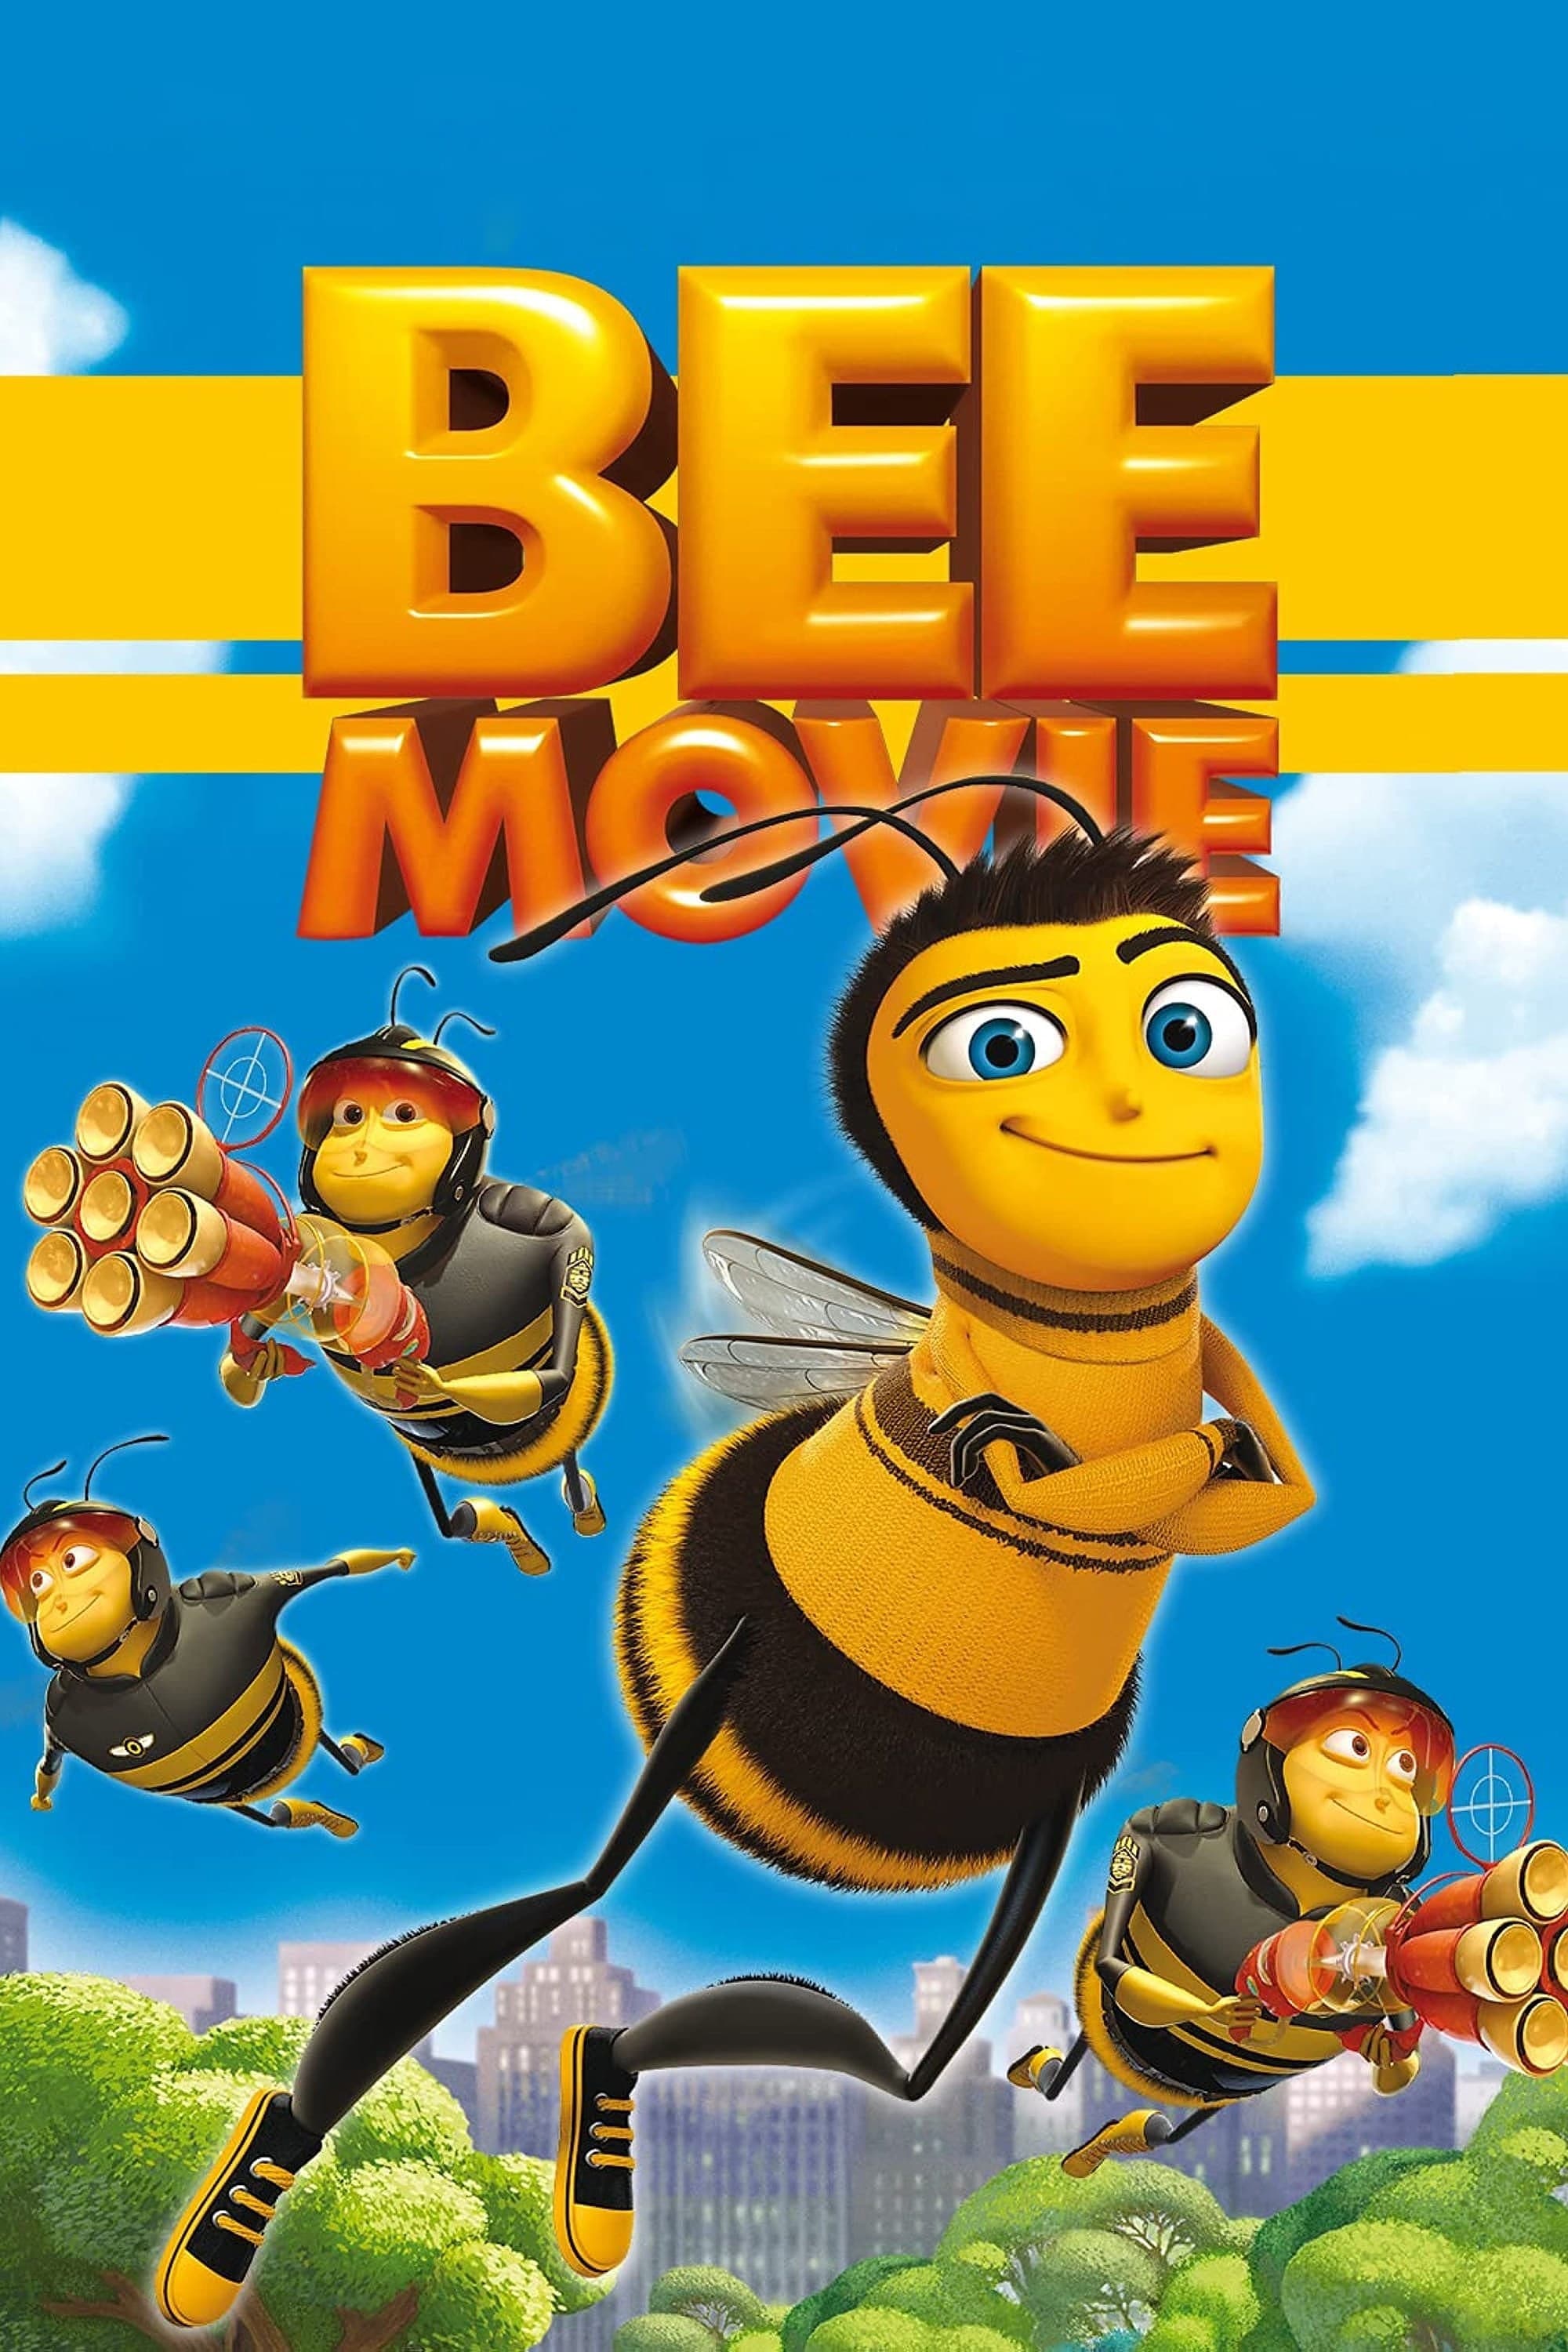 Bee Movie : Drôle d'abeille